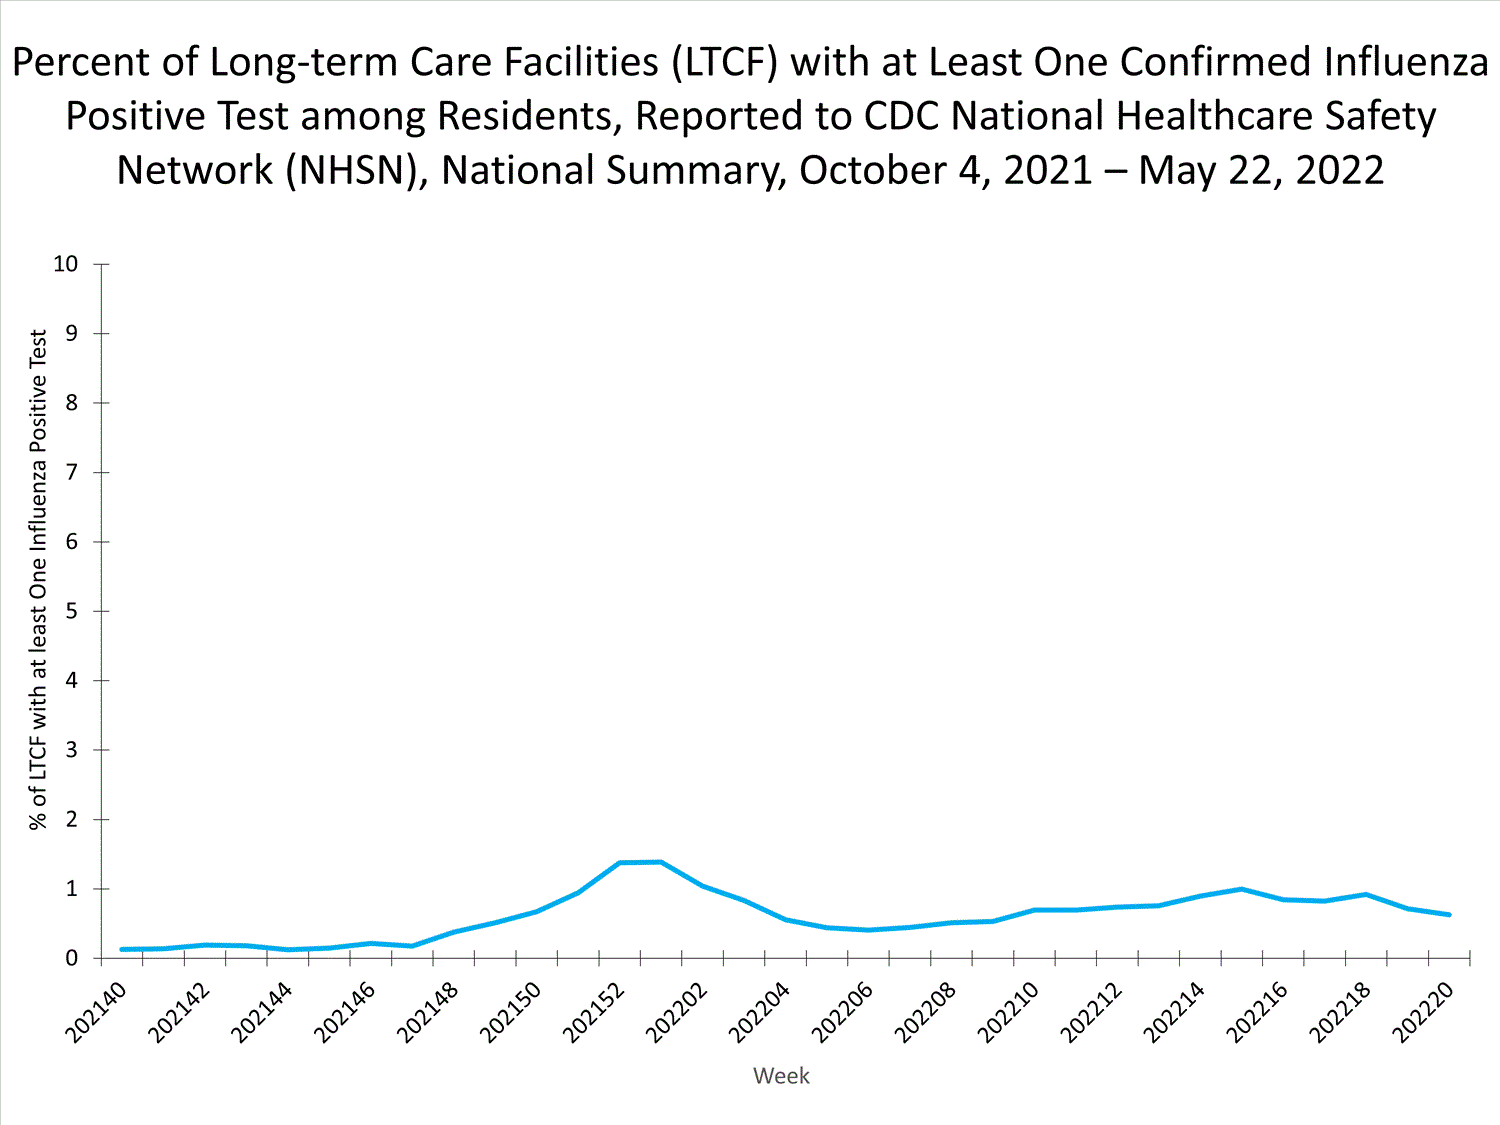 niveles nacionales de influenza en ltcf